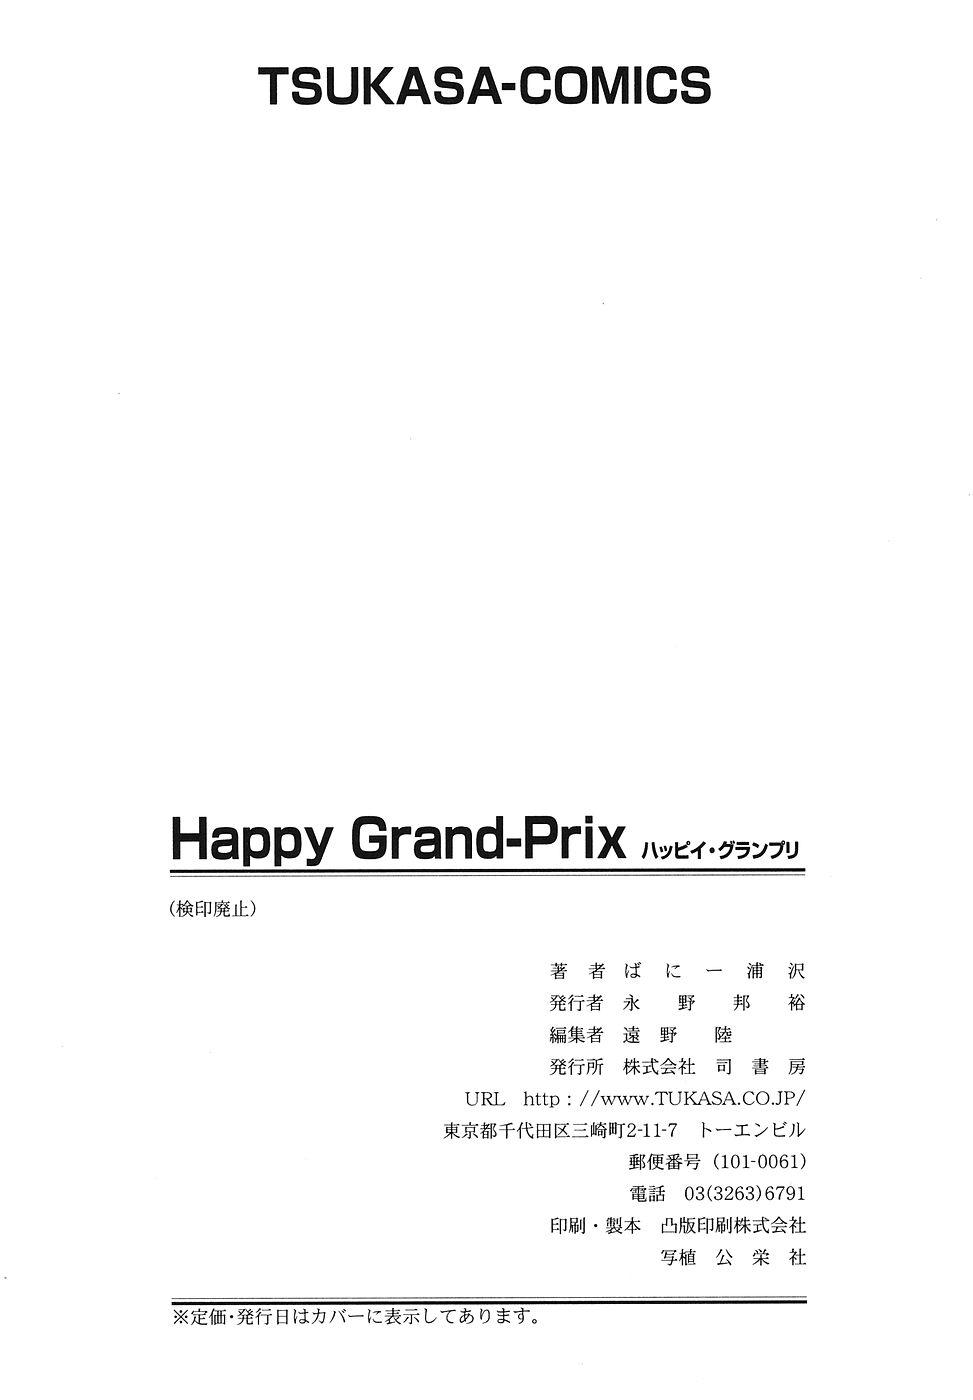 Happy Grand-Prix 163